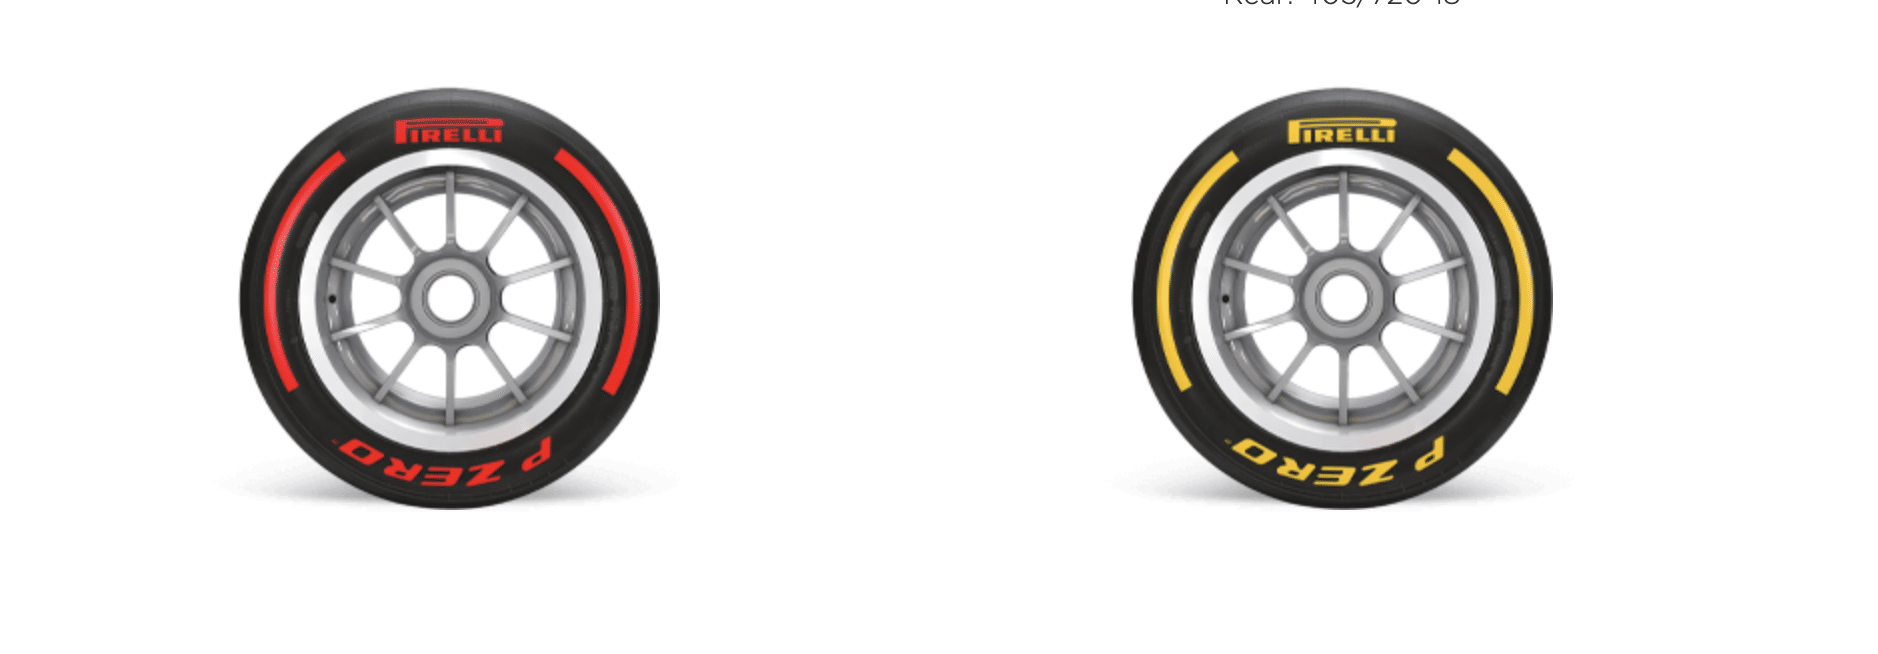 Pirelli wil bandenpartner F1 blijven